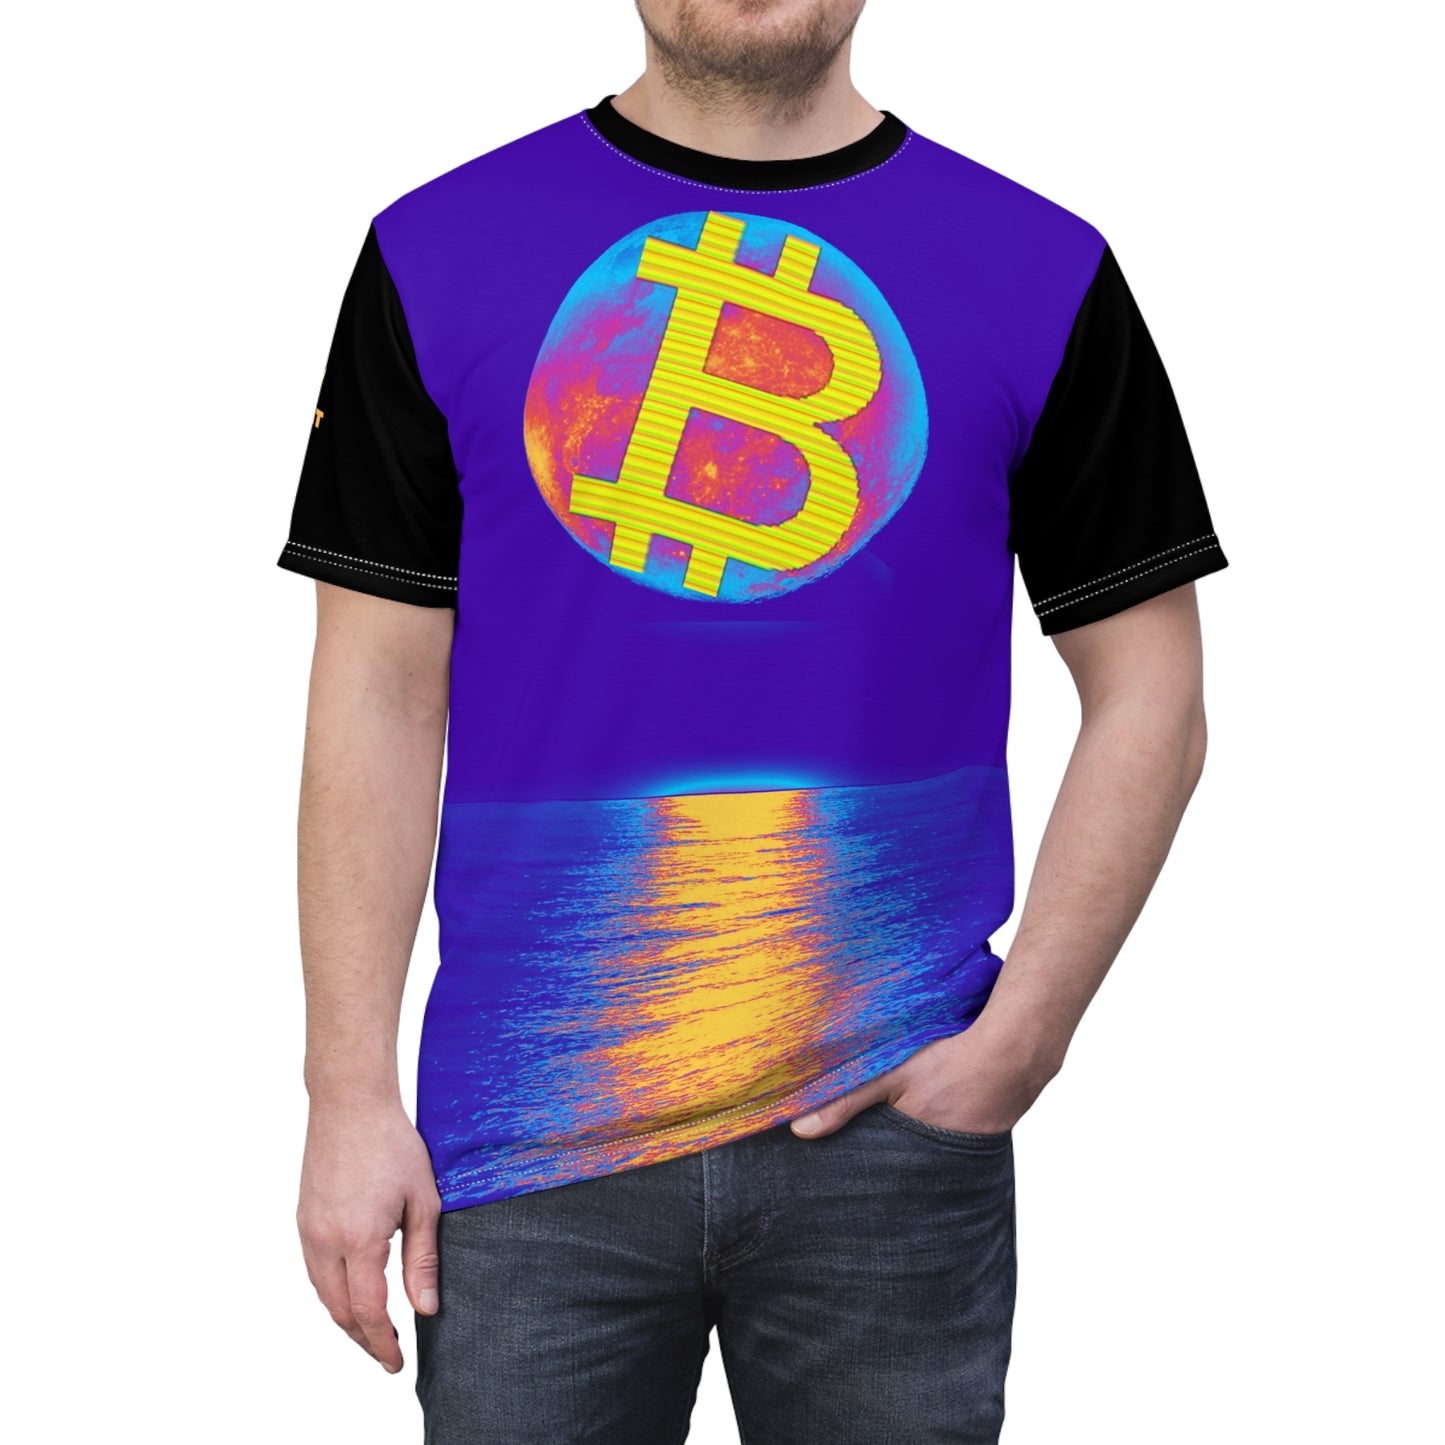 Bitcoin Moon t-paita